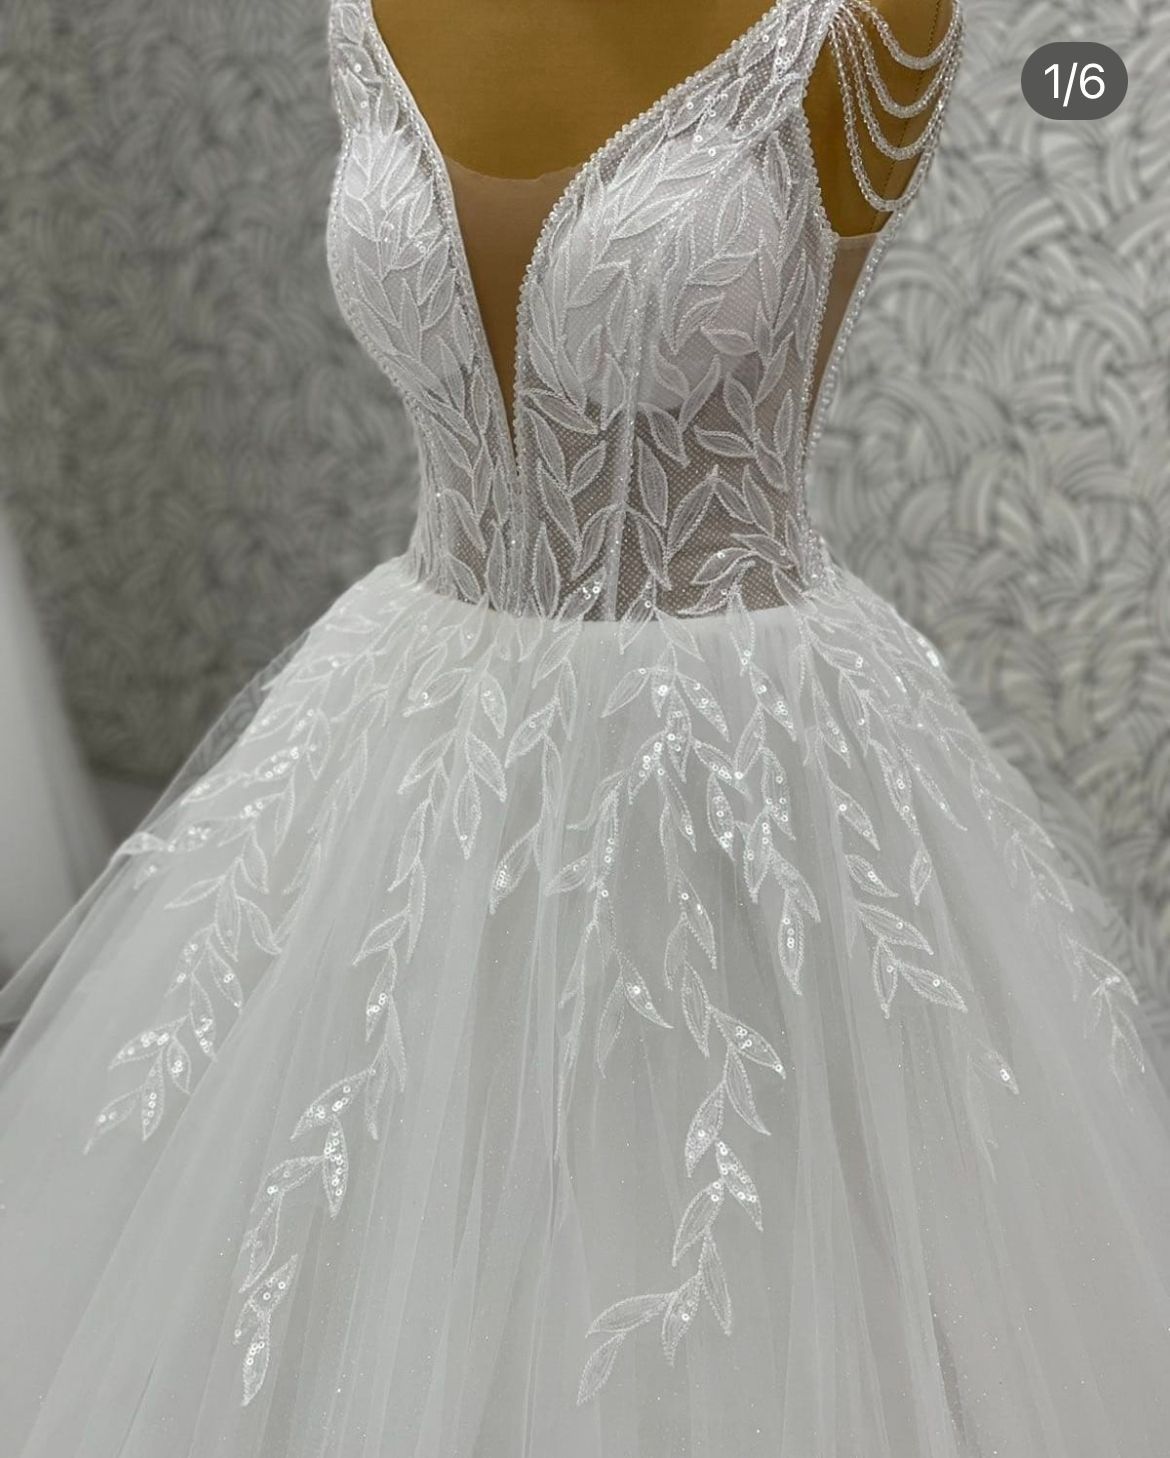 Весільна сукня білого кольору.